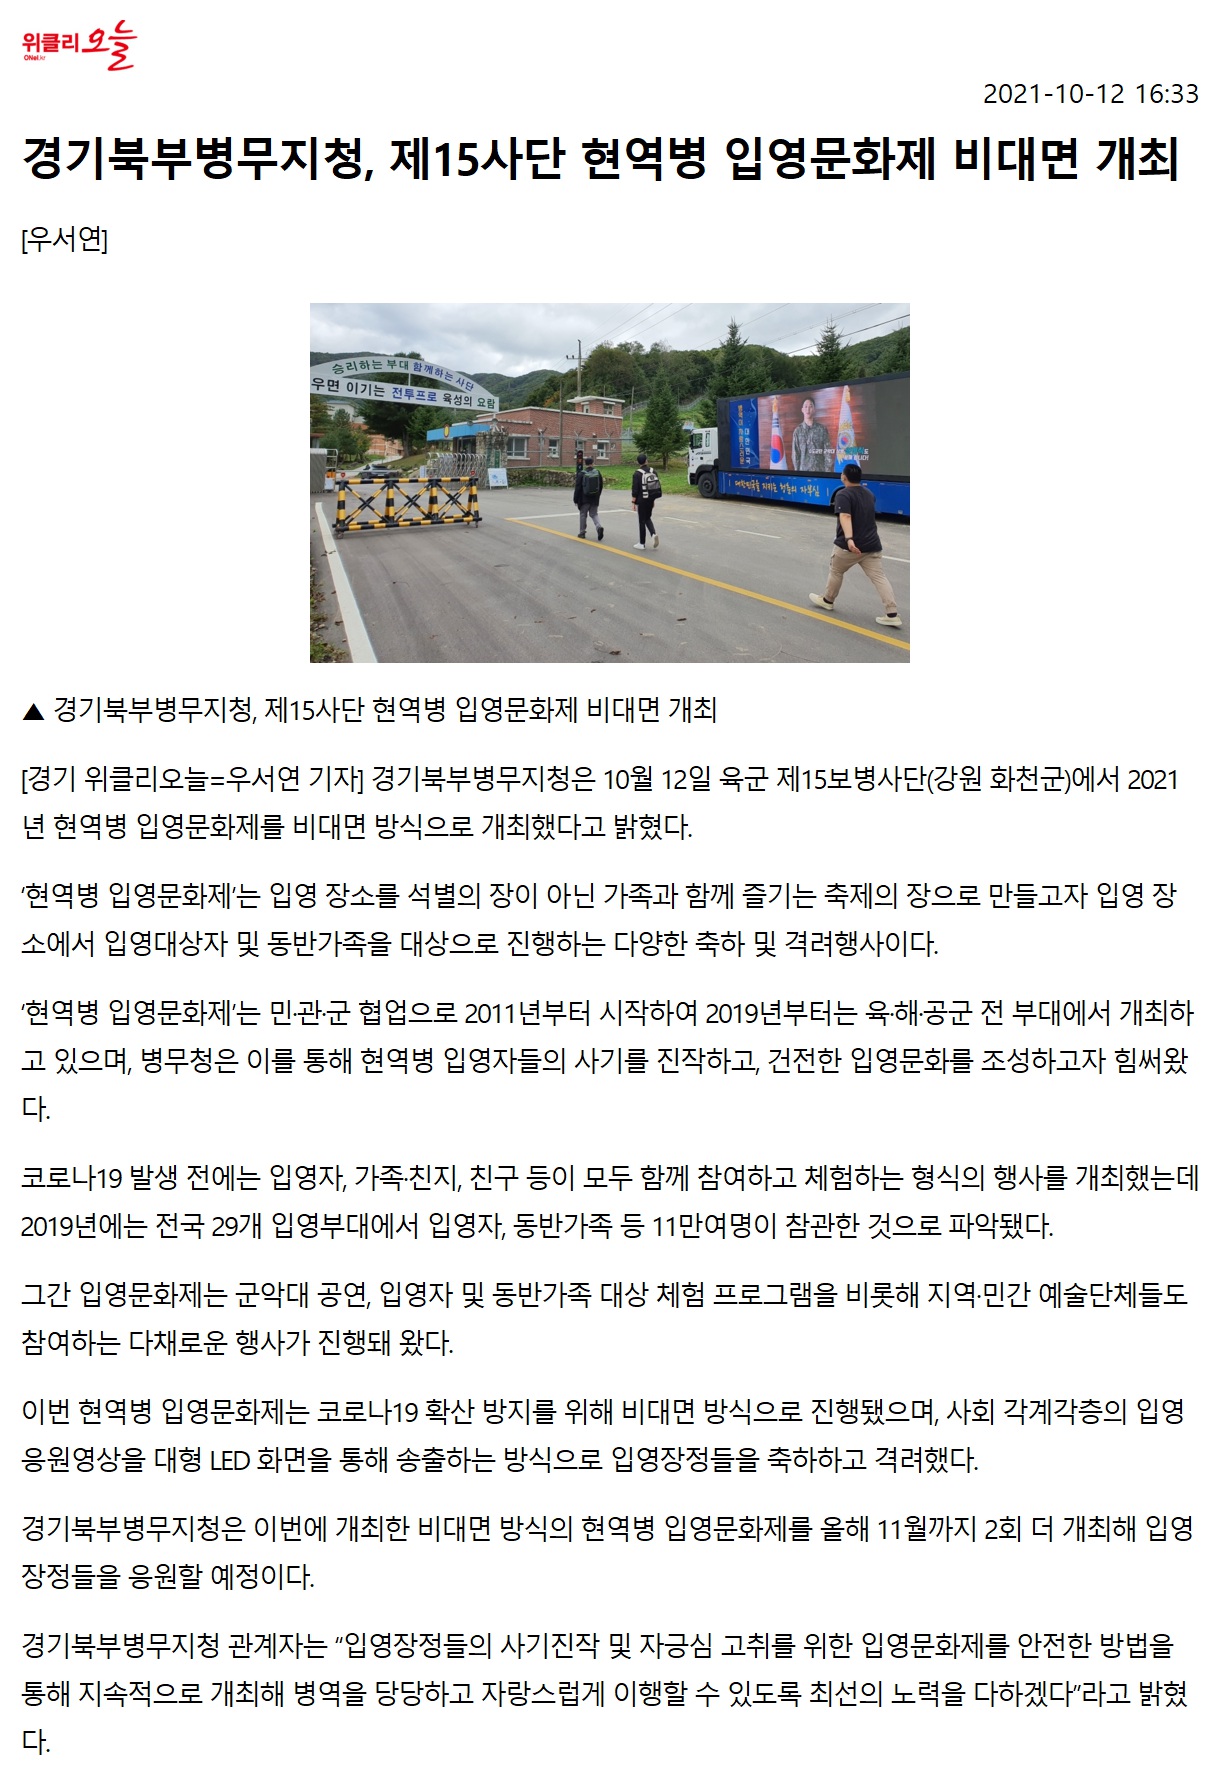 경기북부병무지청, 제15사단 현역병 입영문화제 비대면 개최1